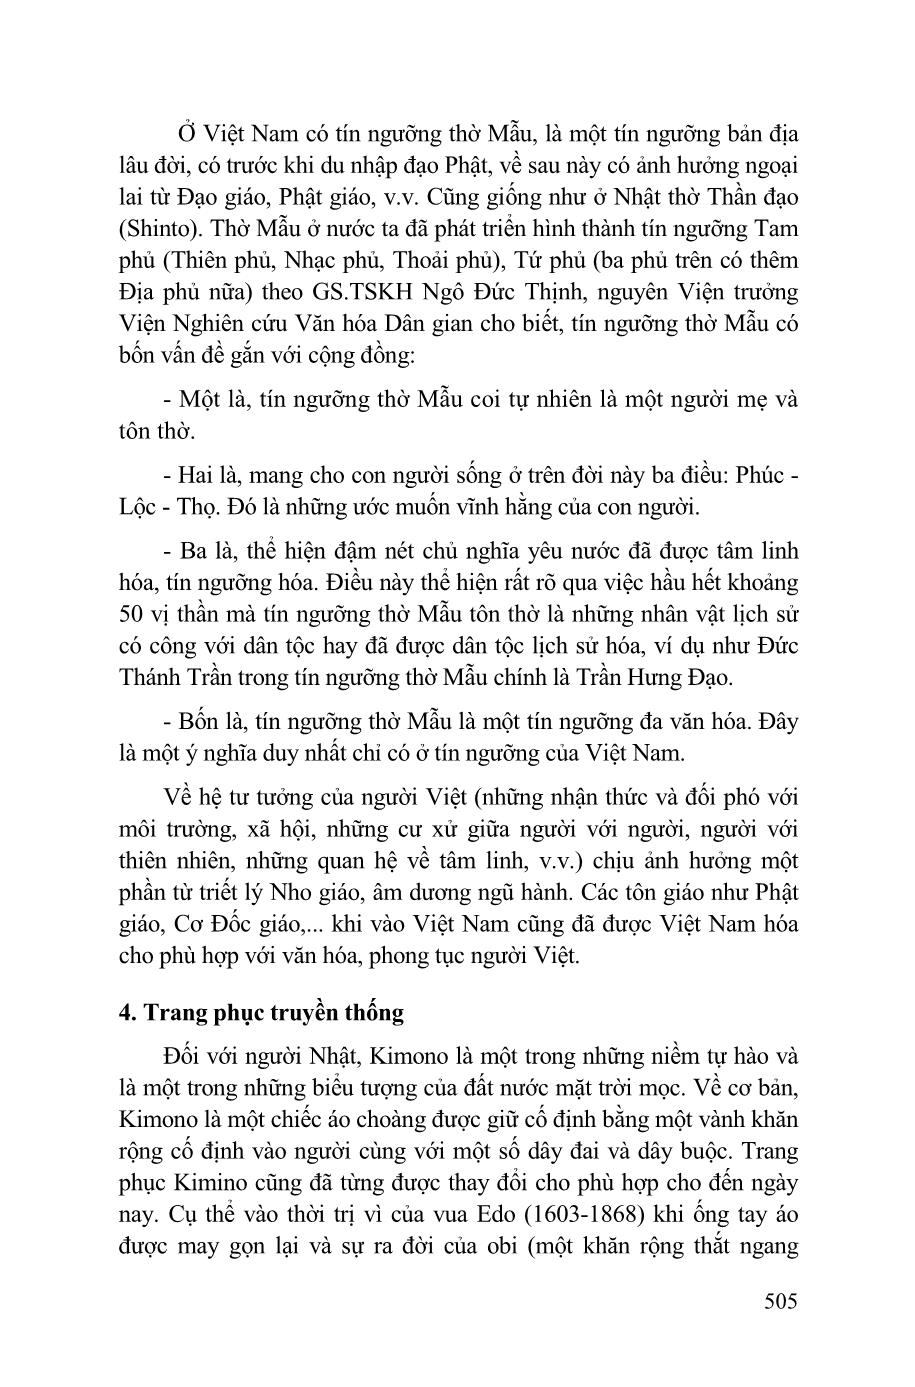 Đôi điều cảm nhận về những nét tương đồng và dị biệt trong văn hóa Việt Nam và Nhật Bản trang 5